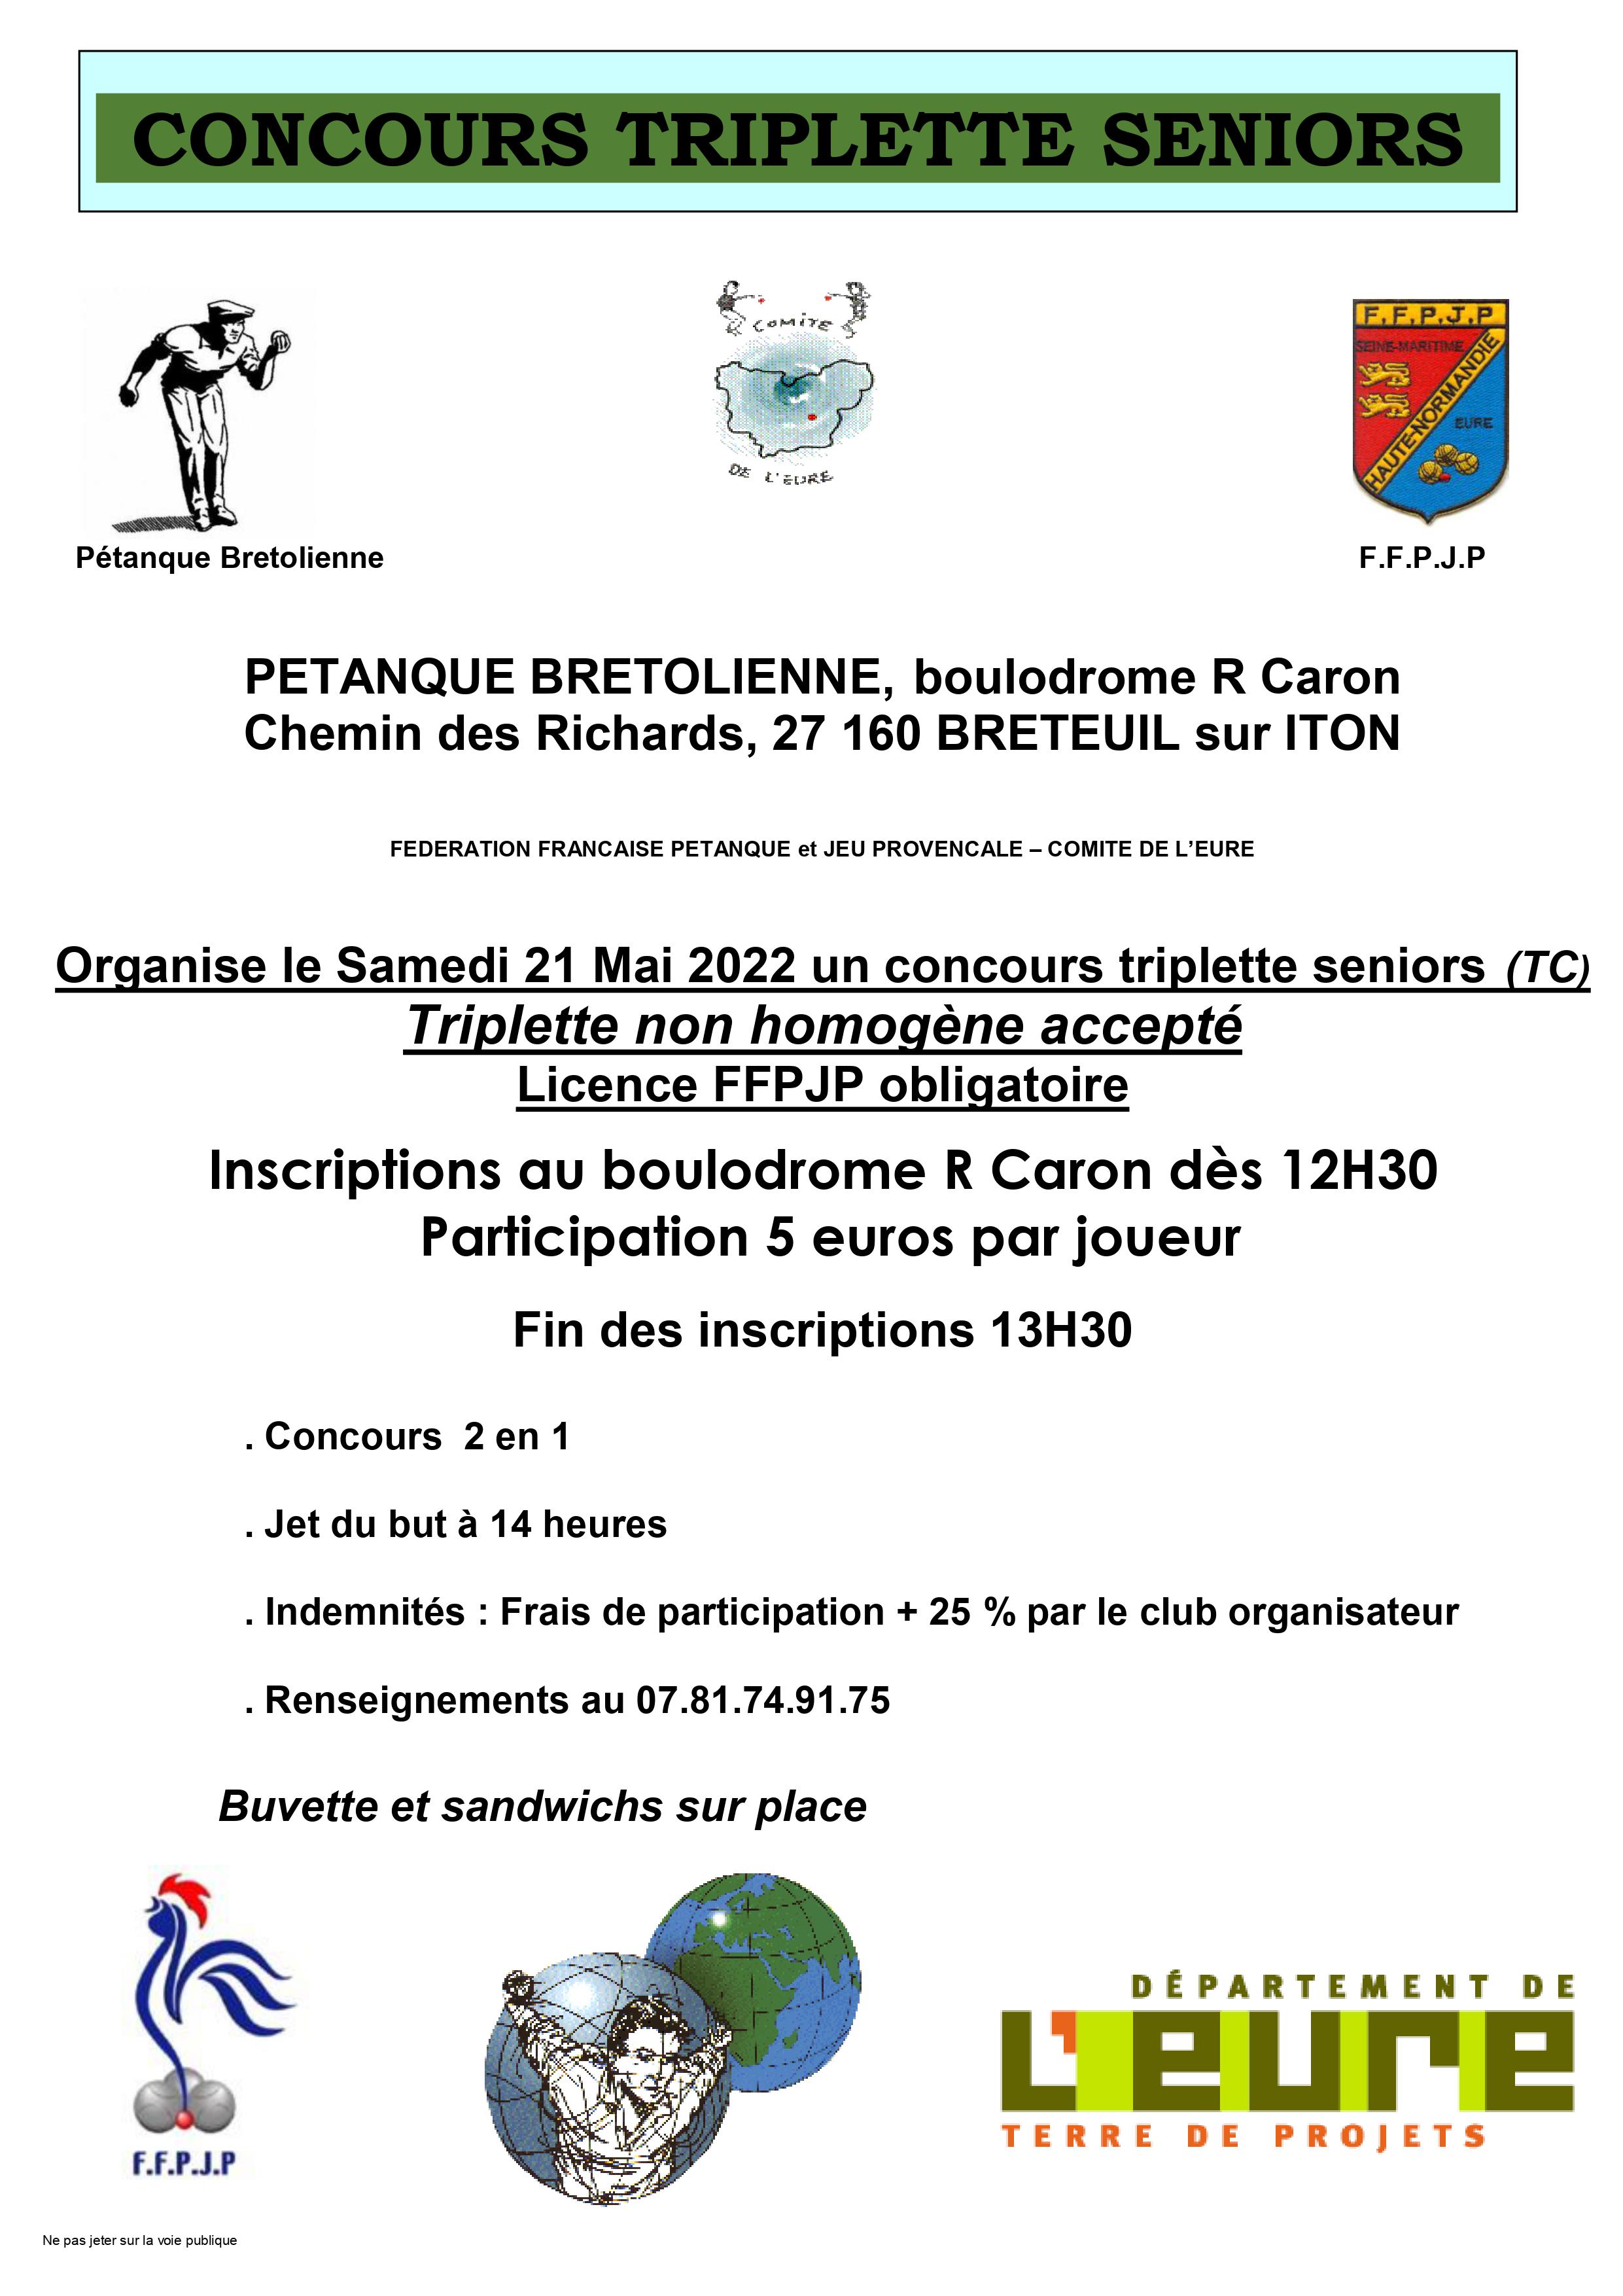 Concours triplette à Breteuil samedi 21 mai